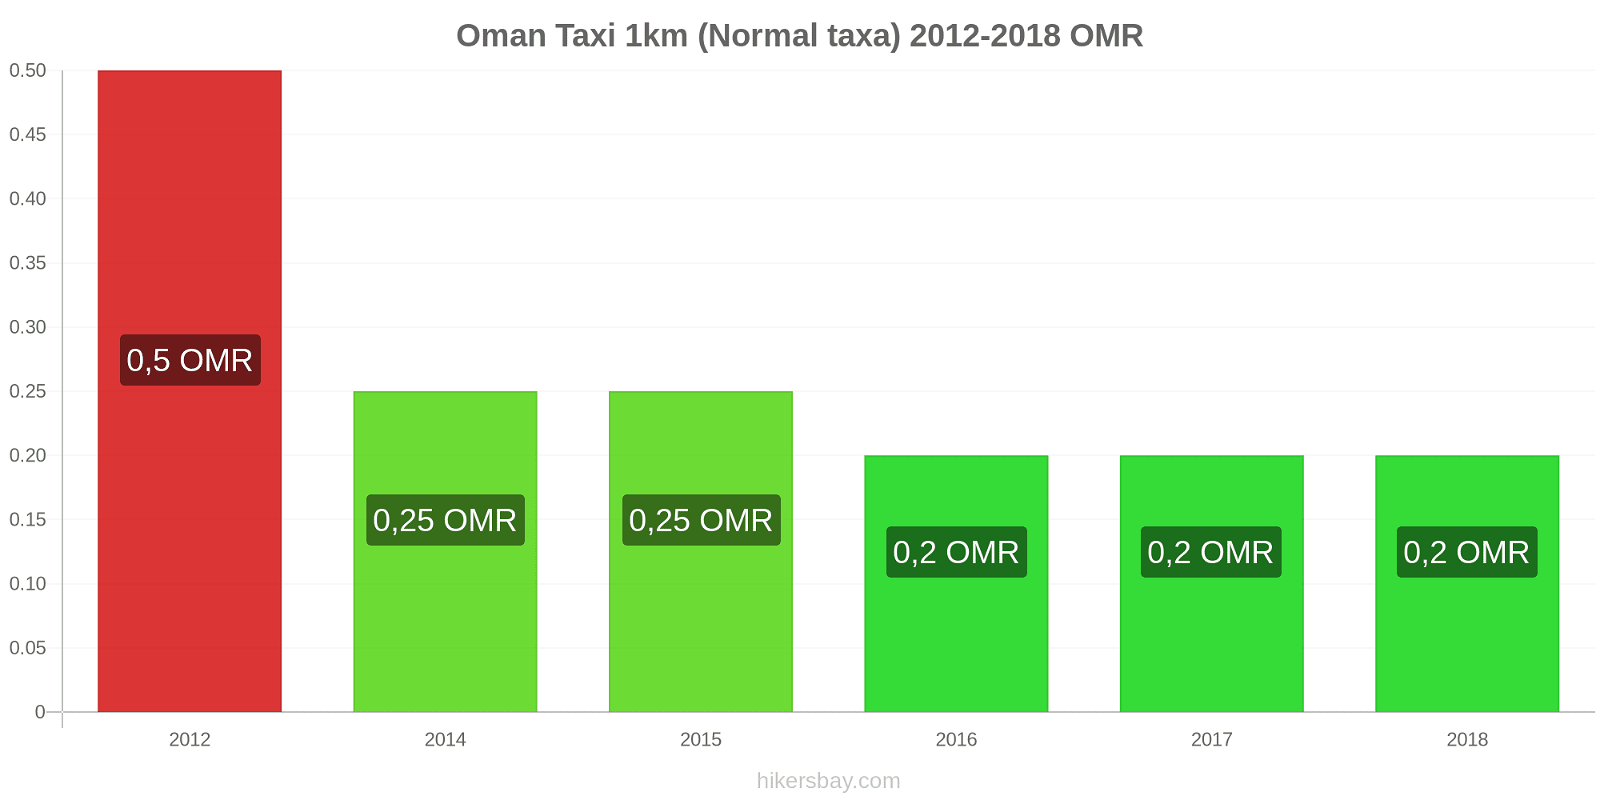 Oman prisändringar Taxi 1km (Normal taxa) hikersbay.com